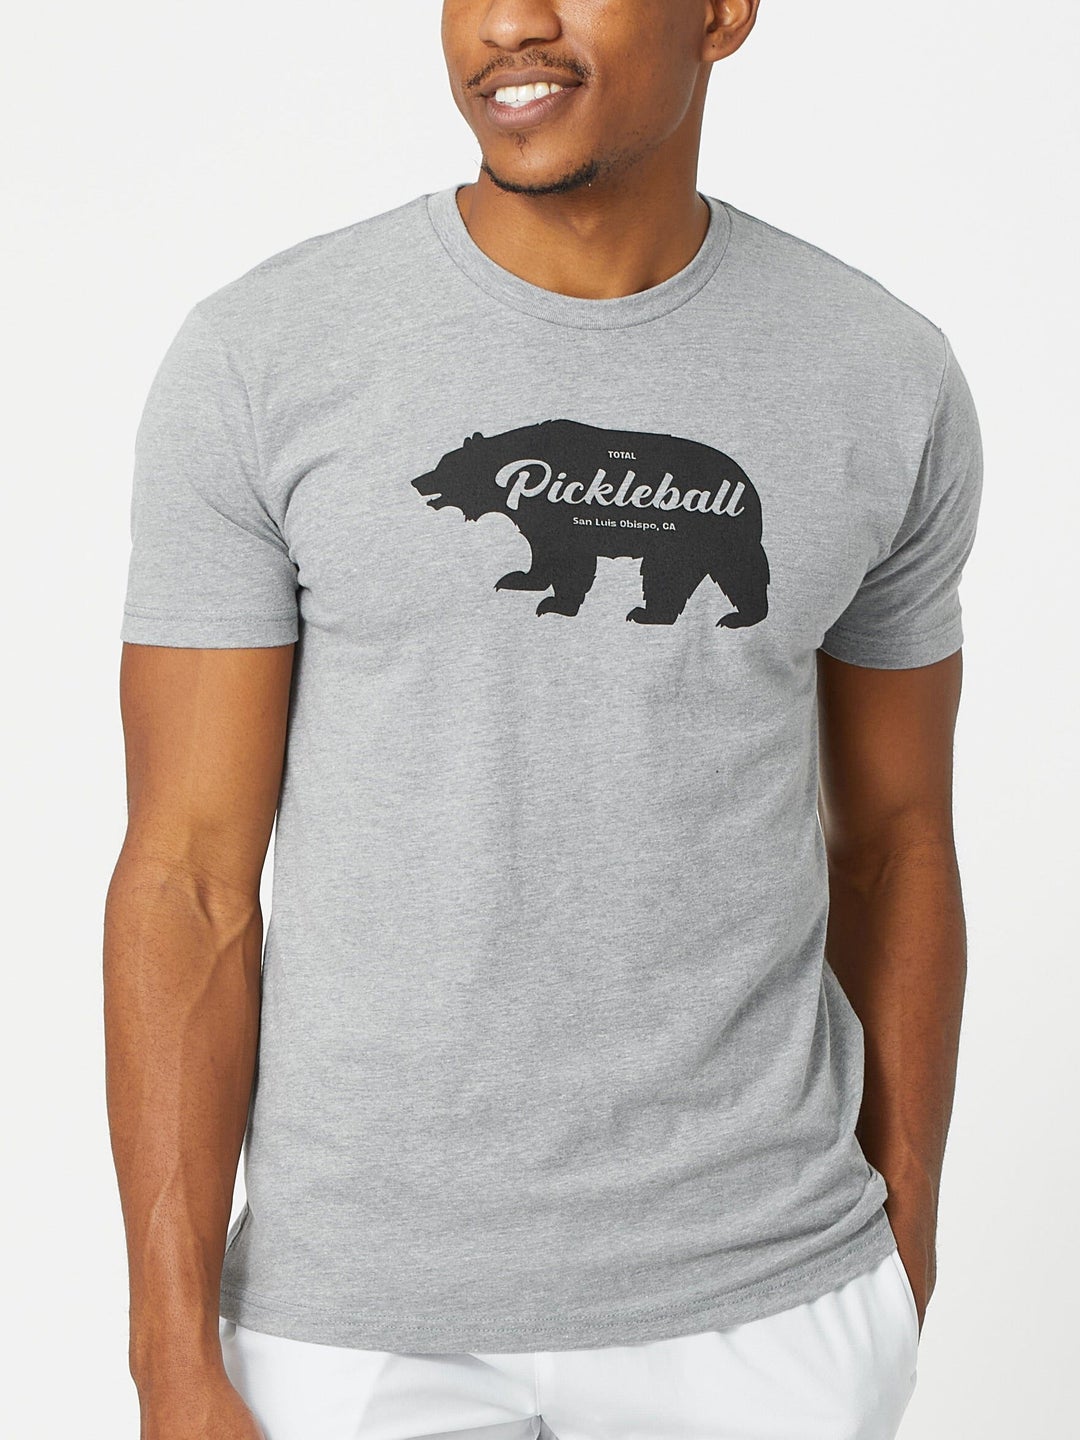 Total Pickleball Bear T-Shirt | Total Pickleball